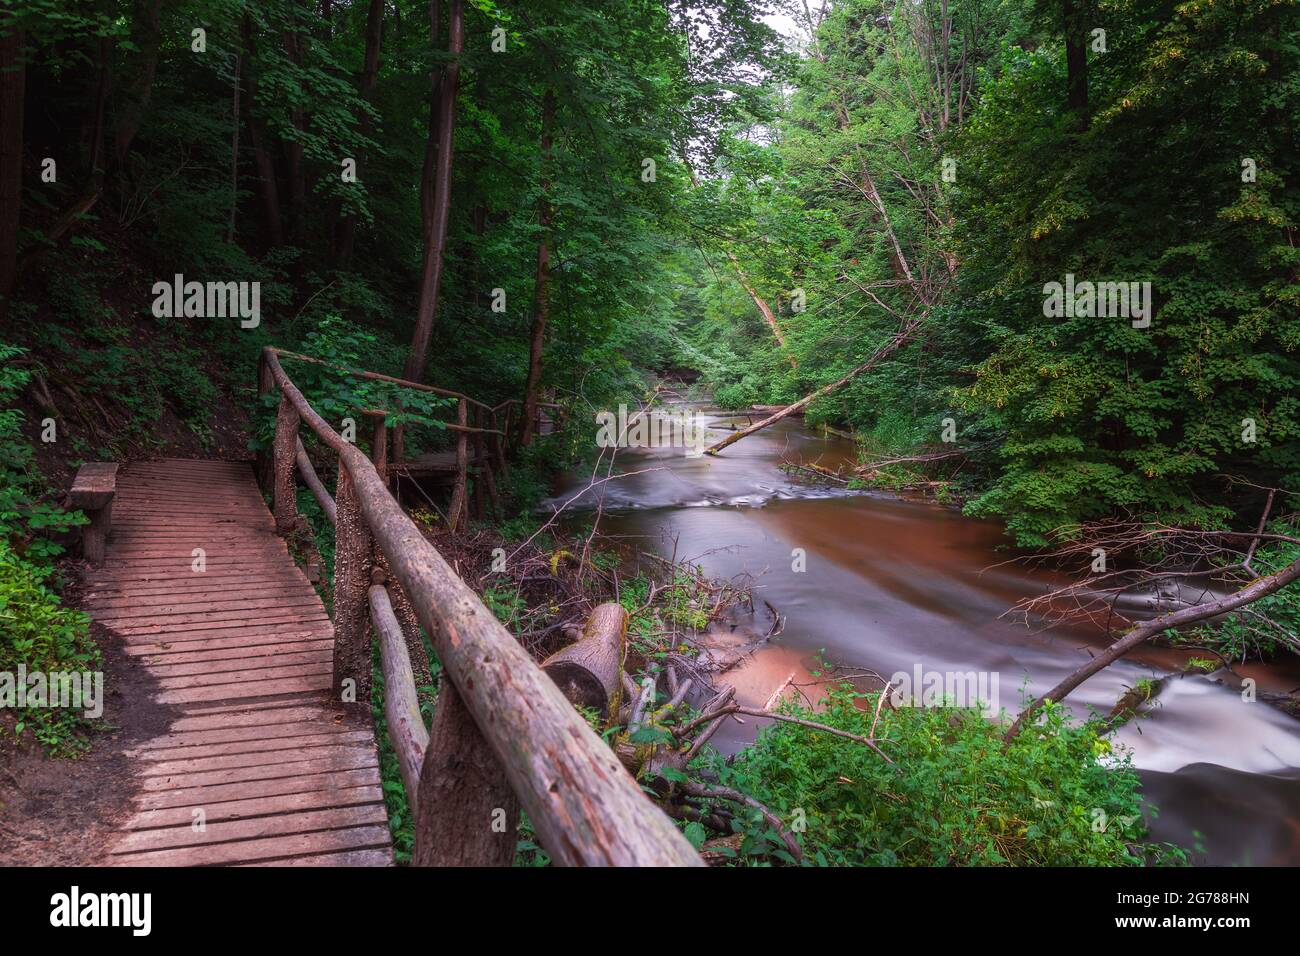 Naturschutzgebiet Kaskaden am Fluss Tanew (Szumy nad Tanwią), Roztocze, Polen. Fluss, der im Sommer durch den grünen Wald fließt. Holzfußbrid Stockfoto